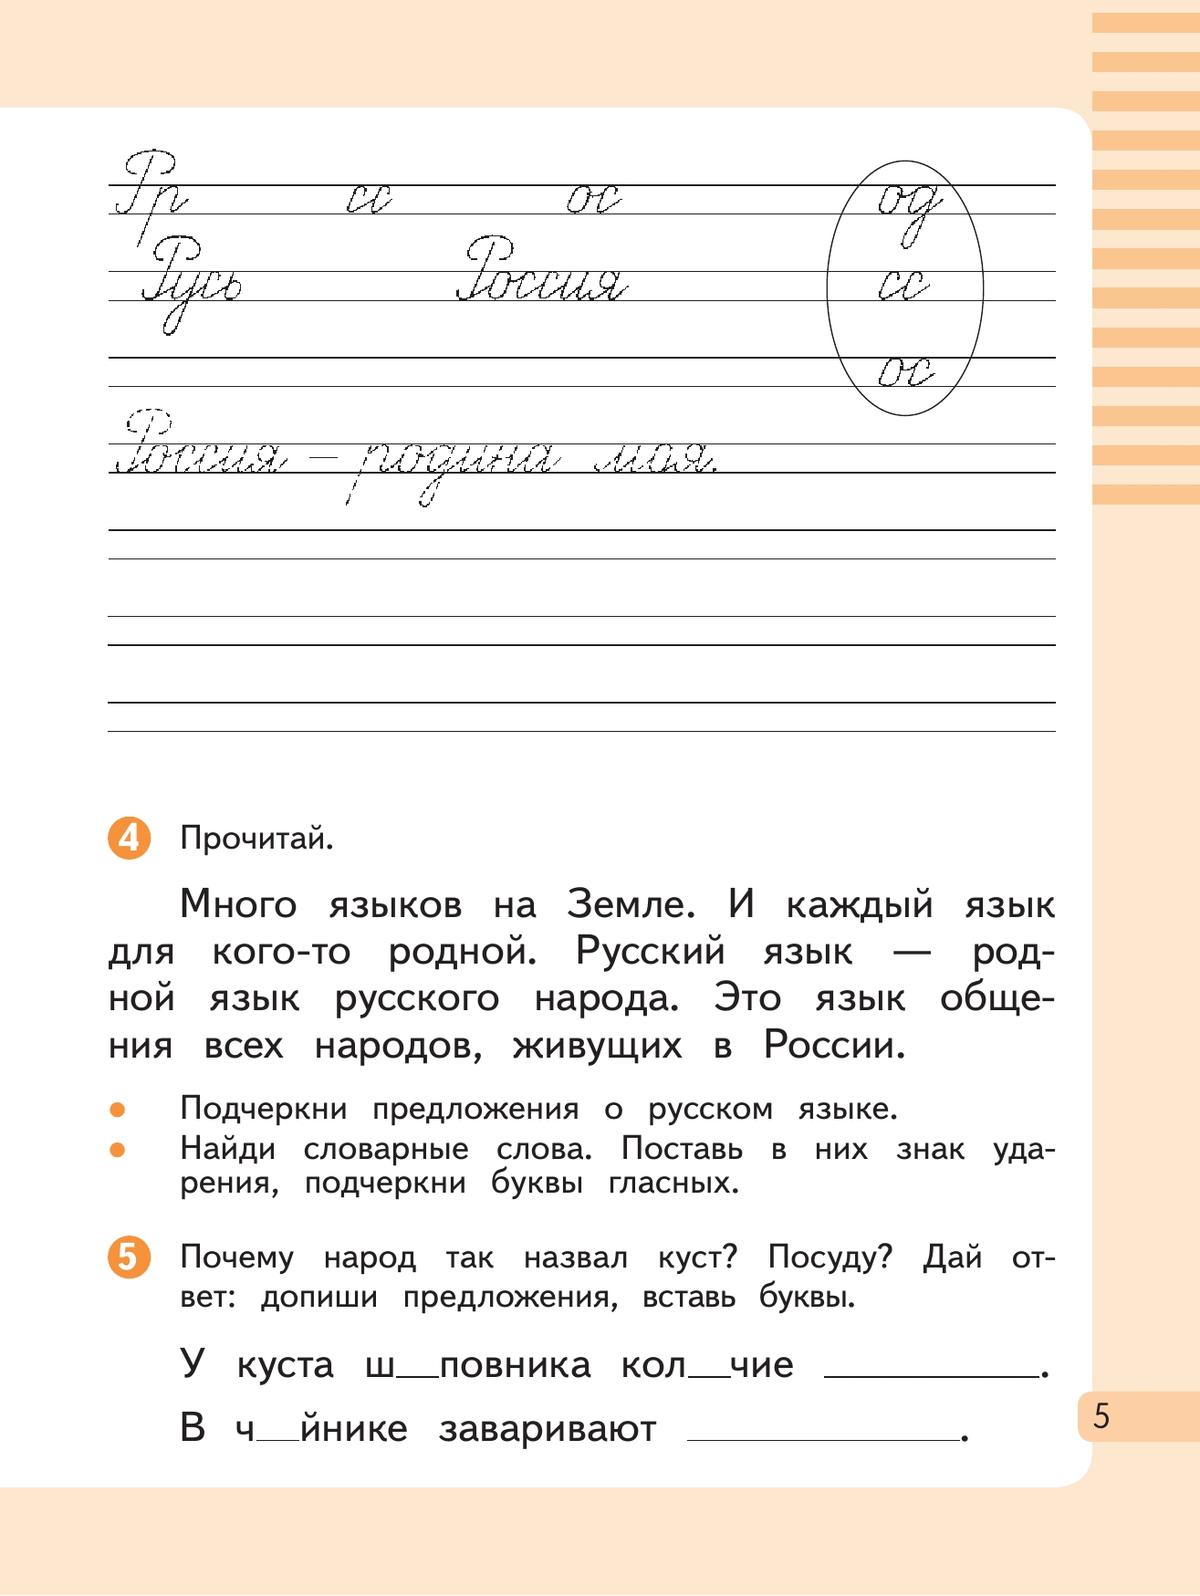 Русский язык. 2 класс. Рабочая тетрадь. В 2 частях. Часть 1 6